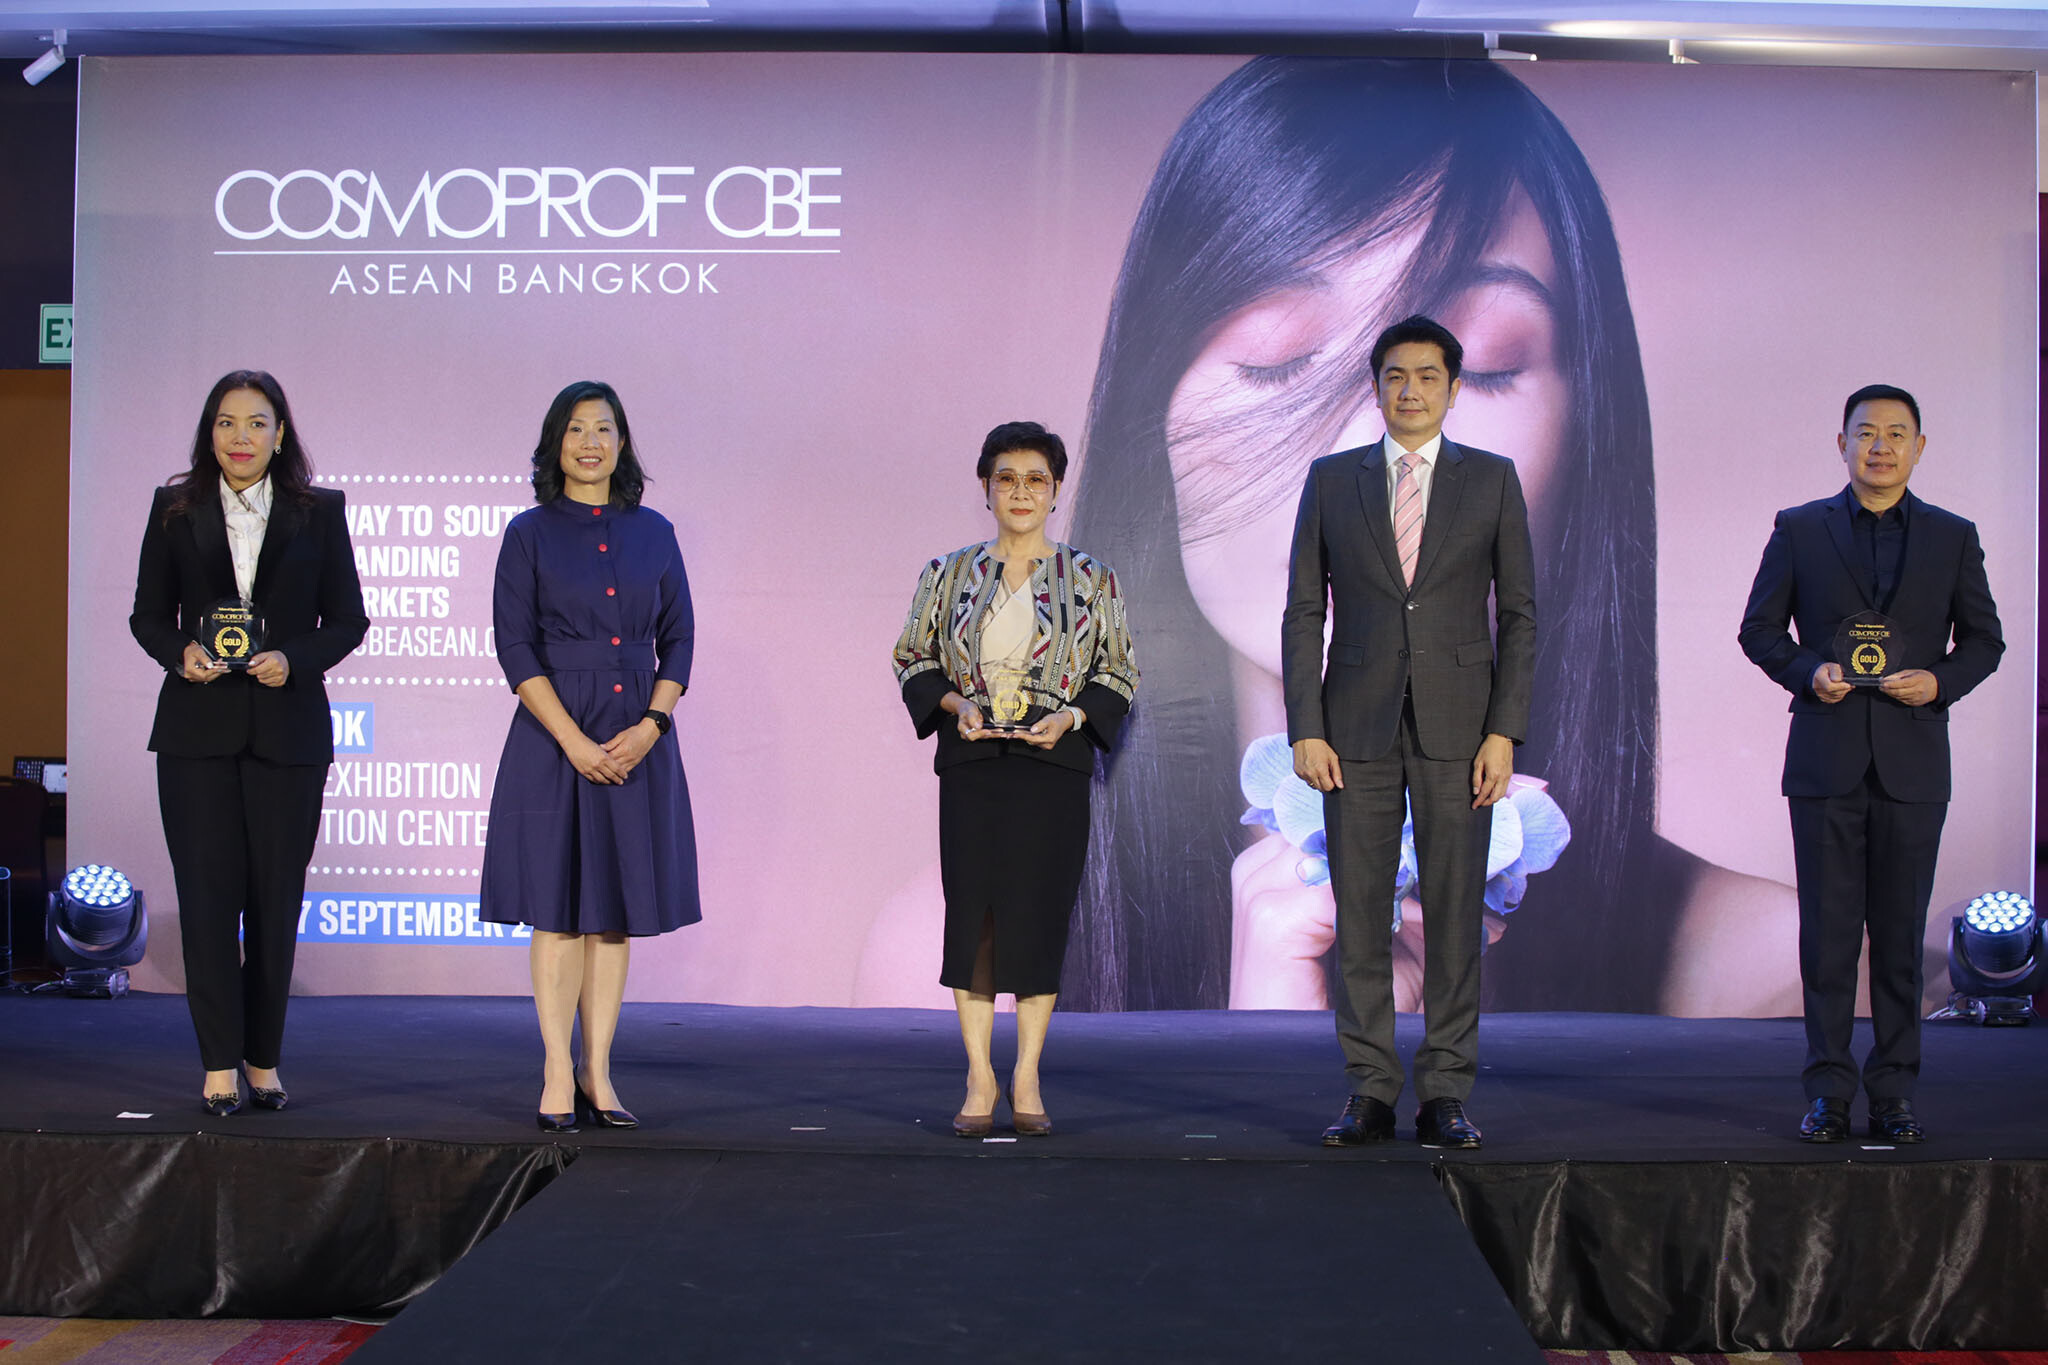 "อินฟอร์มา มาร์เก็ต" ได้ฤกษ์เปิดม่านครั้งแรกกับงานนิทรรศการความงามสุดยิ่งใหญ่ "Cosmoprof CBE ASEAN 2022"